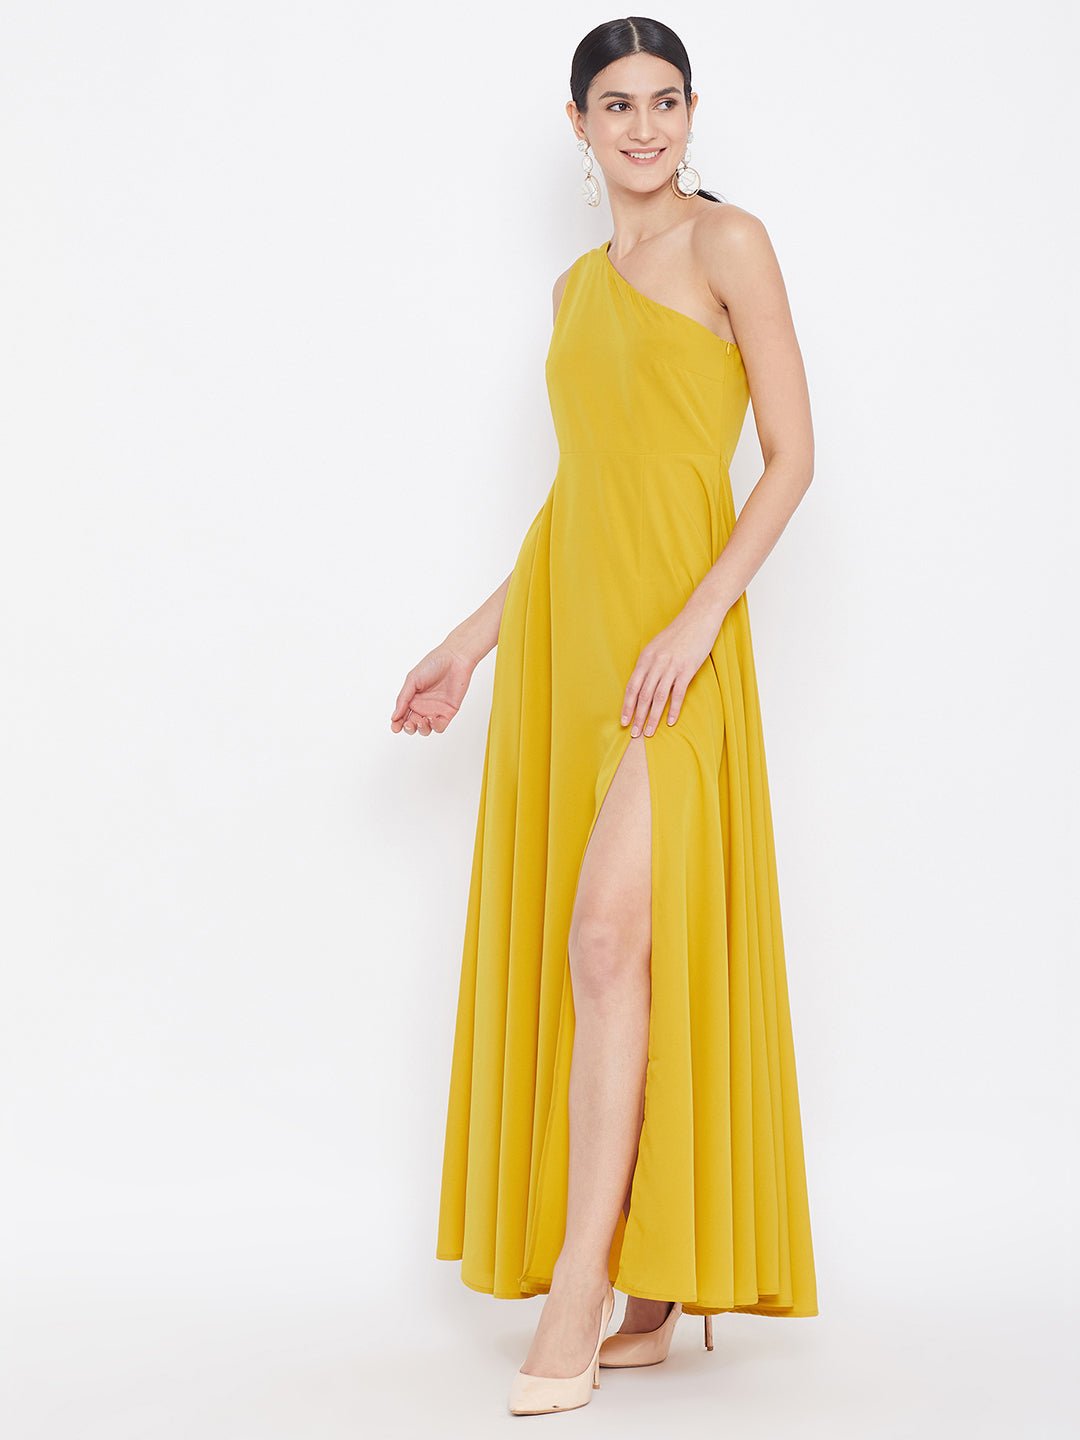 Folk Republic Women Solid Yellow One-Shoulder A-Line Maxi Dress - #folk republic#